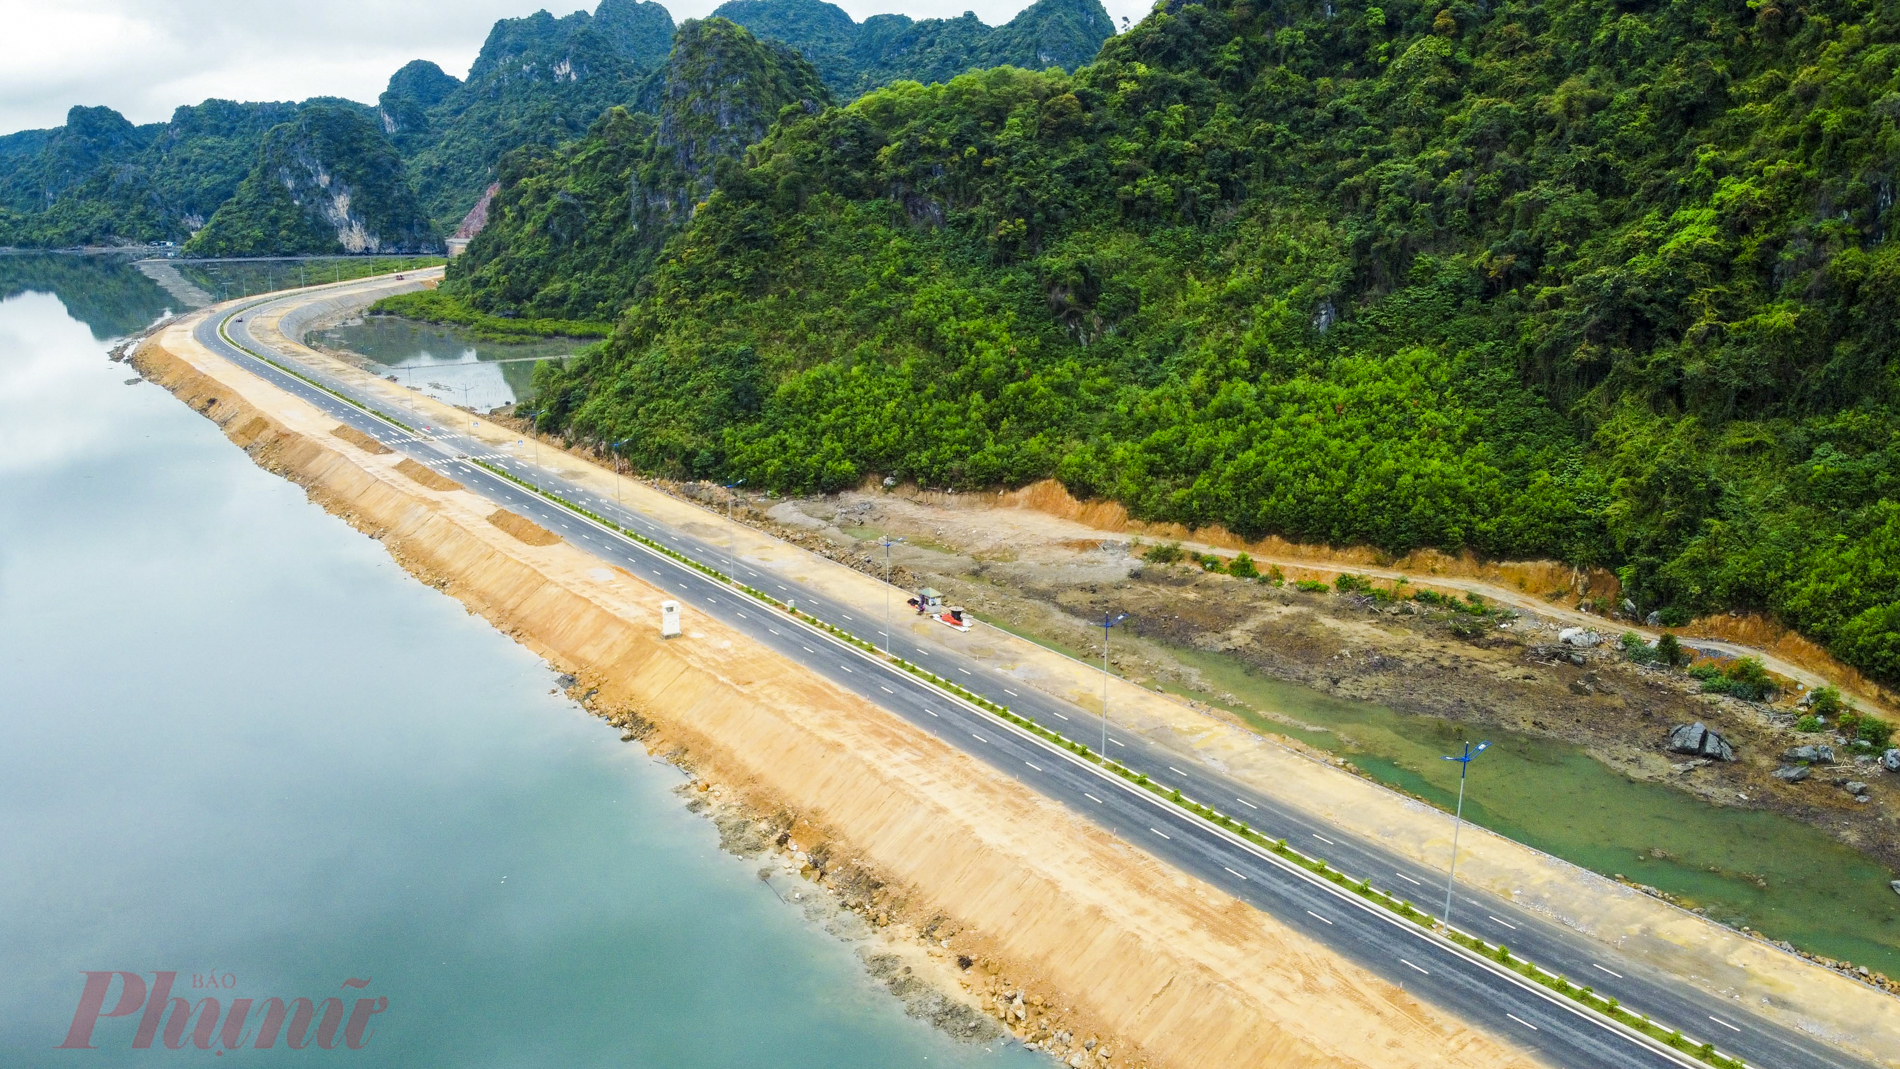 Sau đó, UBND tỉnh Quảng Ninh phê duyệt điều chỉnh toàn bộ tuyến từ 4 lên 6 làn xe; hoàn chỉnh các hạng mục hầm qua núi, cầu, cống qua đường, thoát nước ngang đường. Tổng mức đầu tư điều chỉnh dự án là 2.290 tỷ đồng. Hiện tại, tuyến đường đã được thông xe kỹ thuật giai đoạn 1.